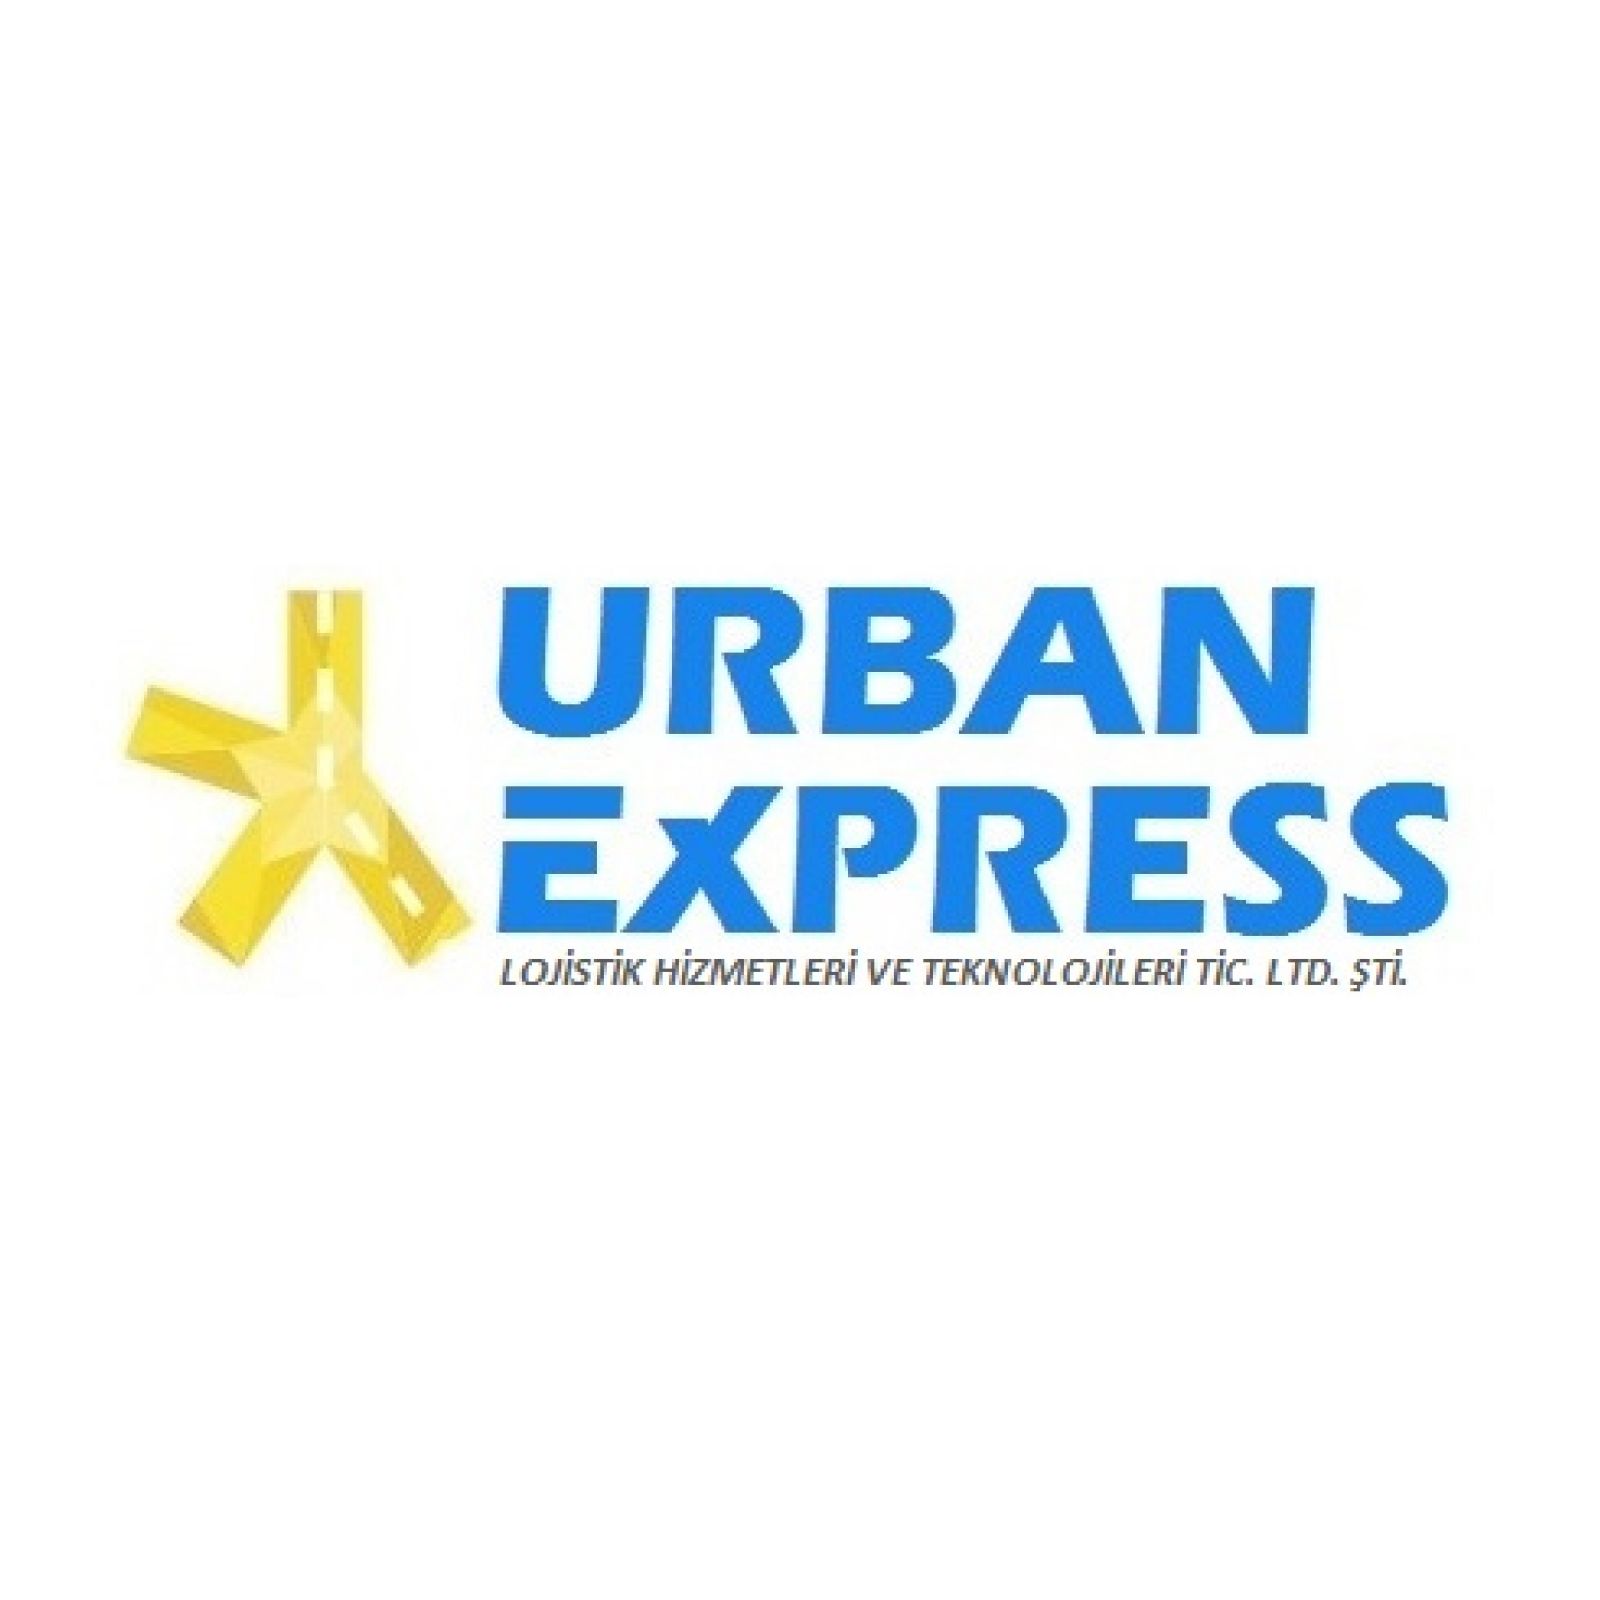 Urban Express Lojistik Hizmetleri ve Teknolojileri Tic. Ltd. Şti.